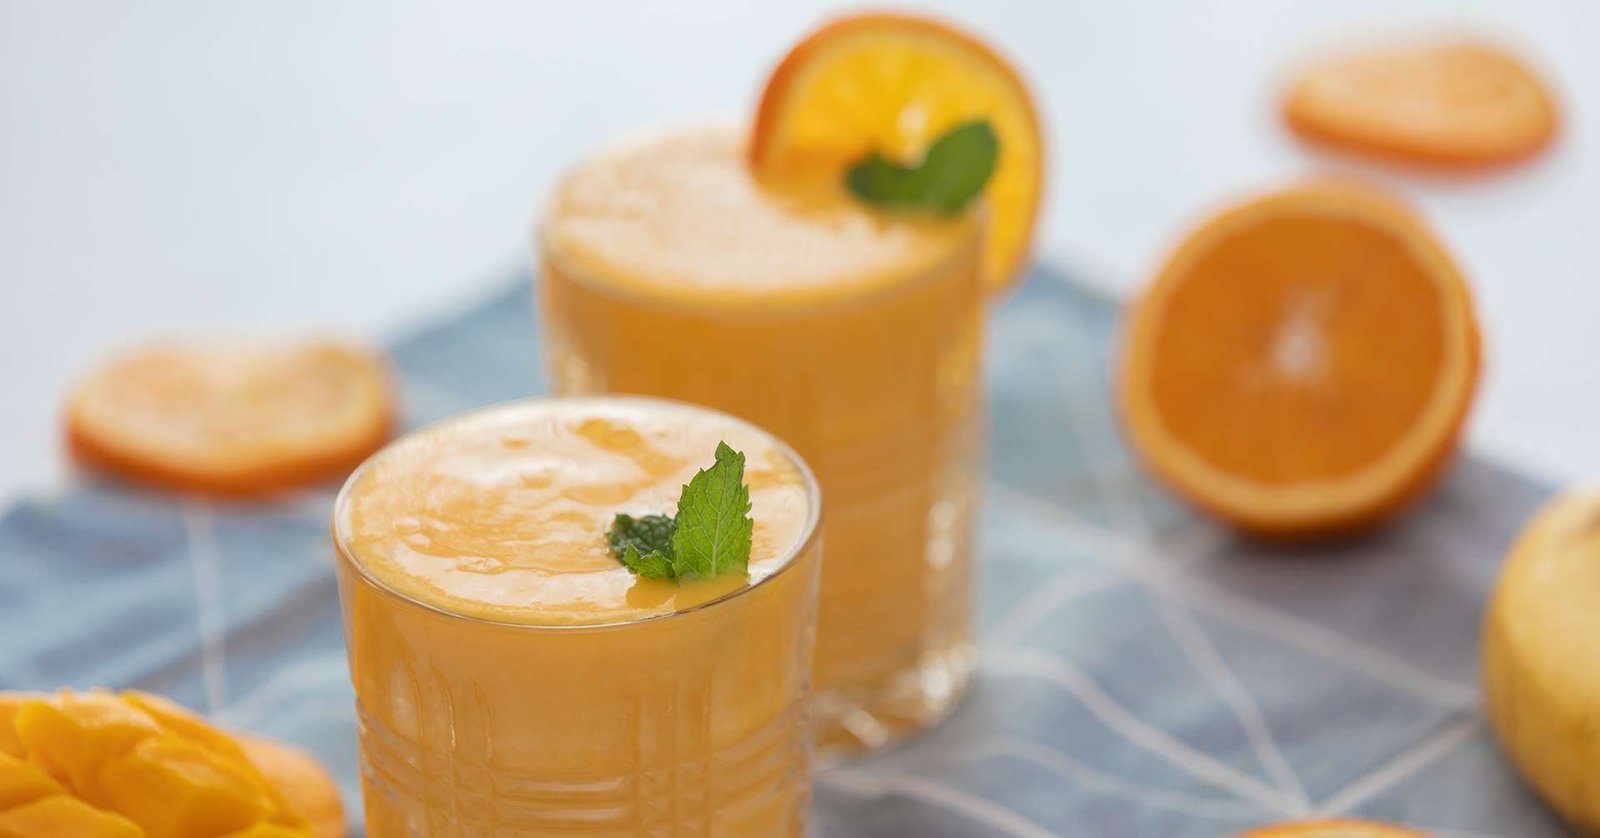 mango tango juice with sliced mango and orange